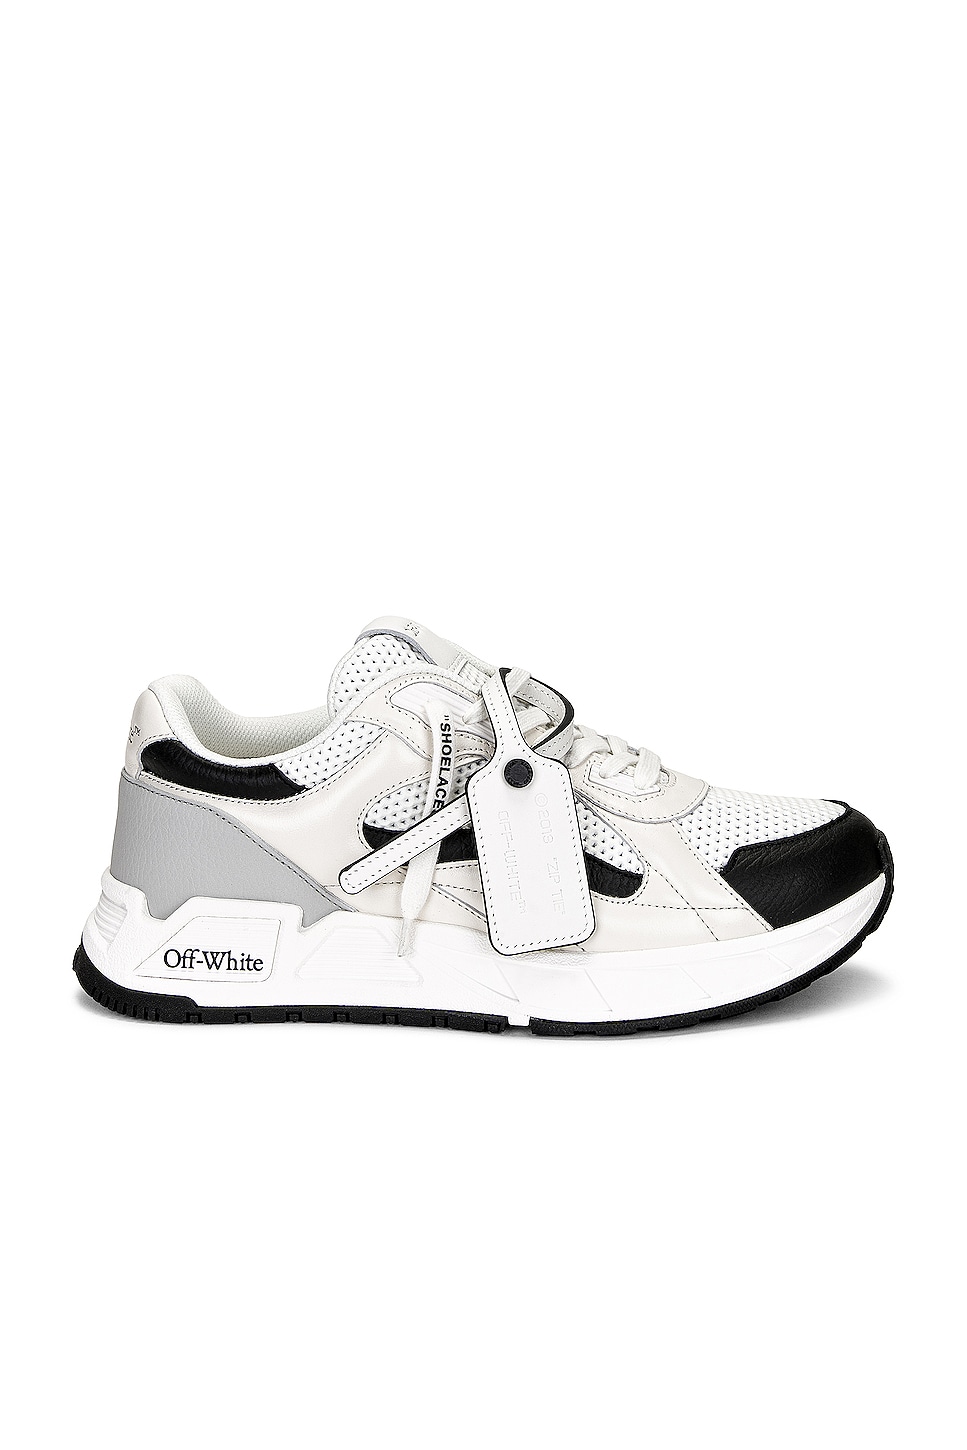 Image 1 of OFF-WHITE Runner B Sneaker in White & Black